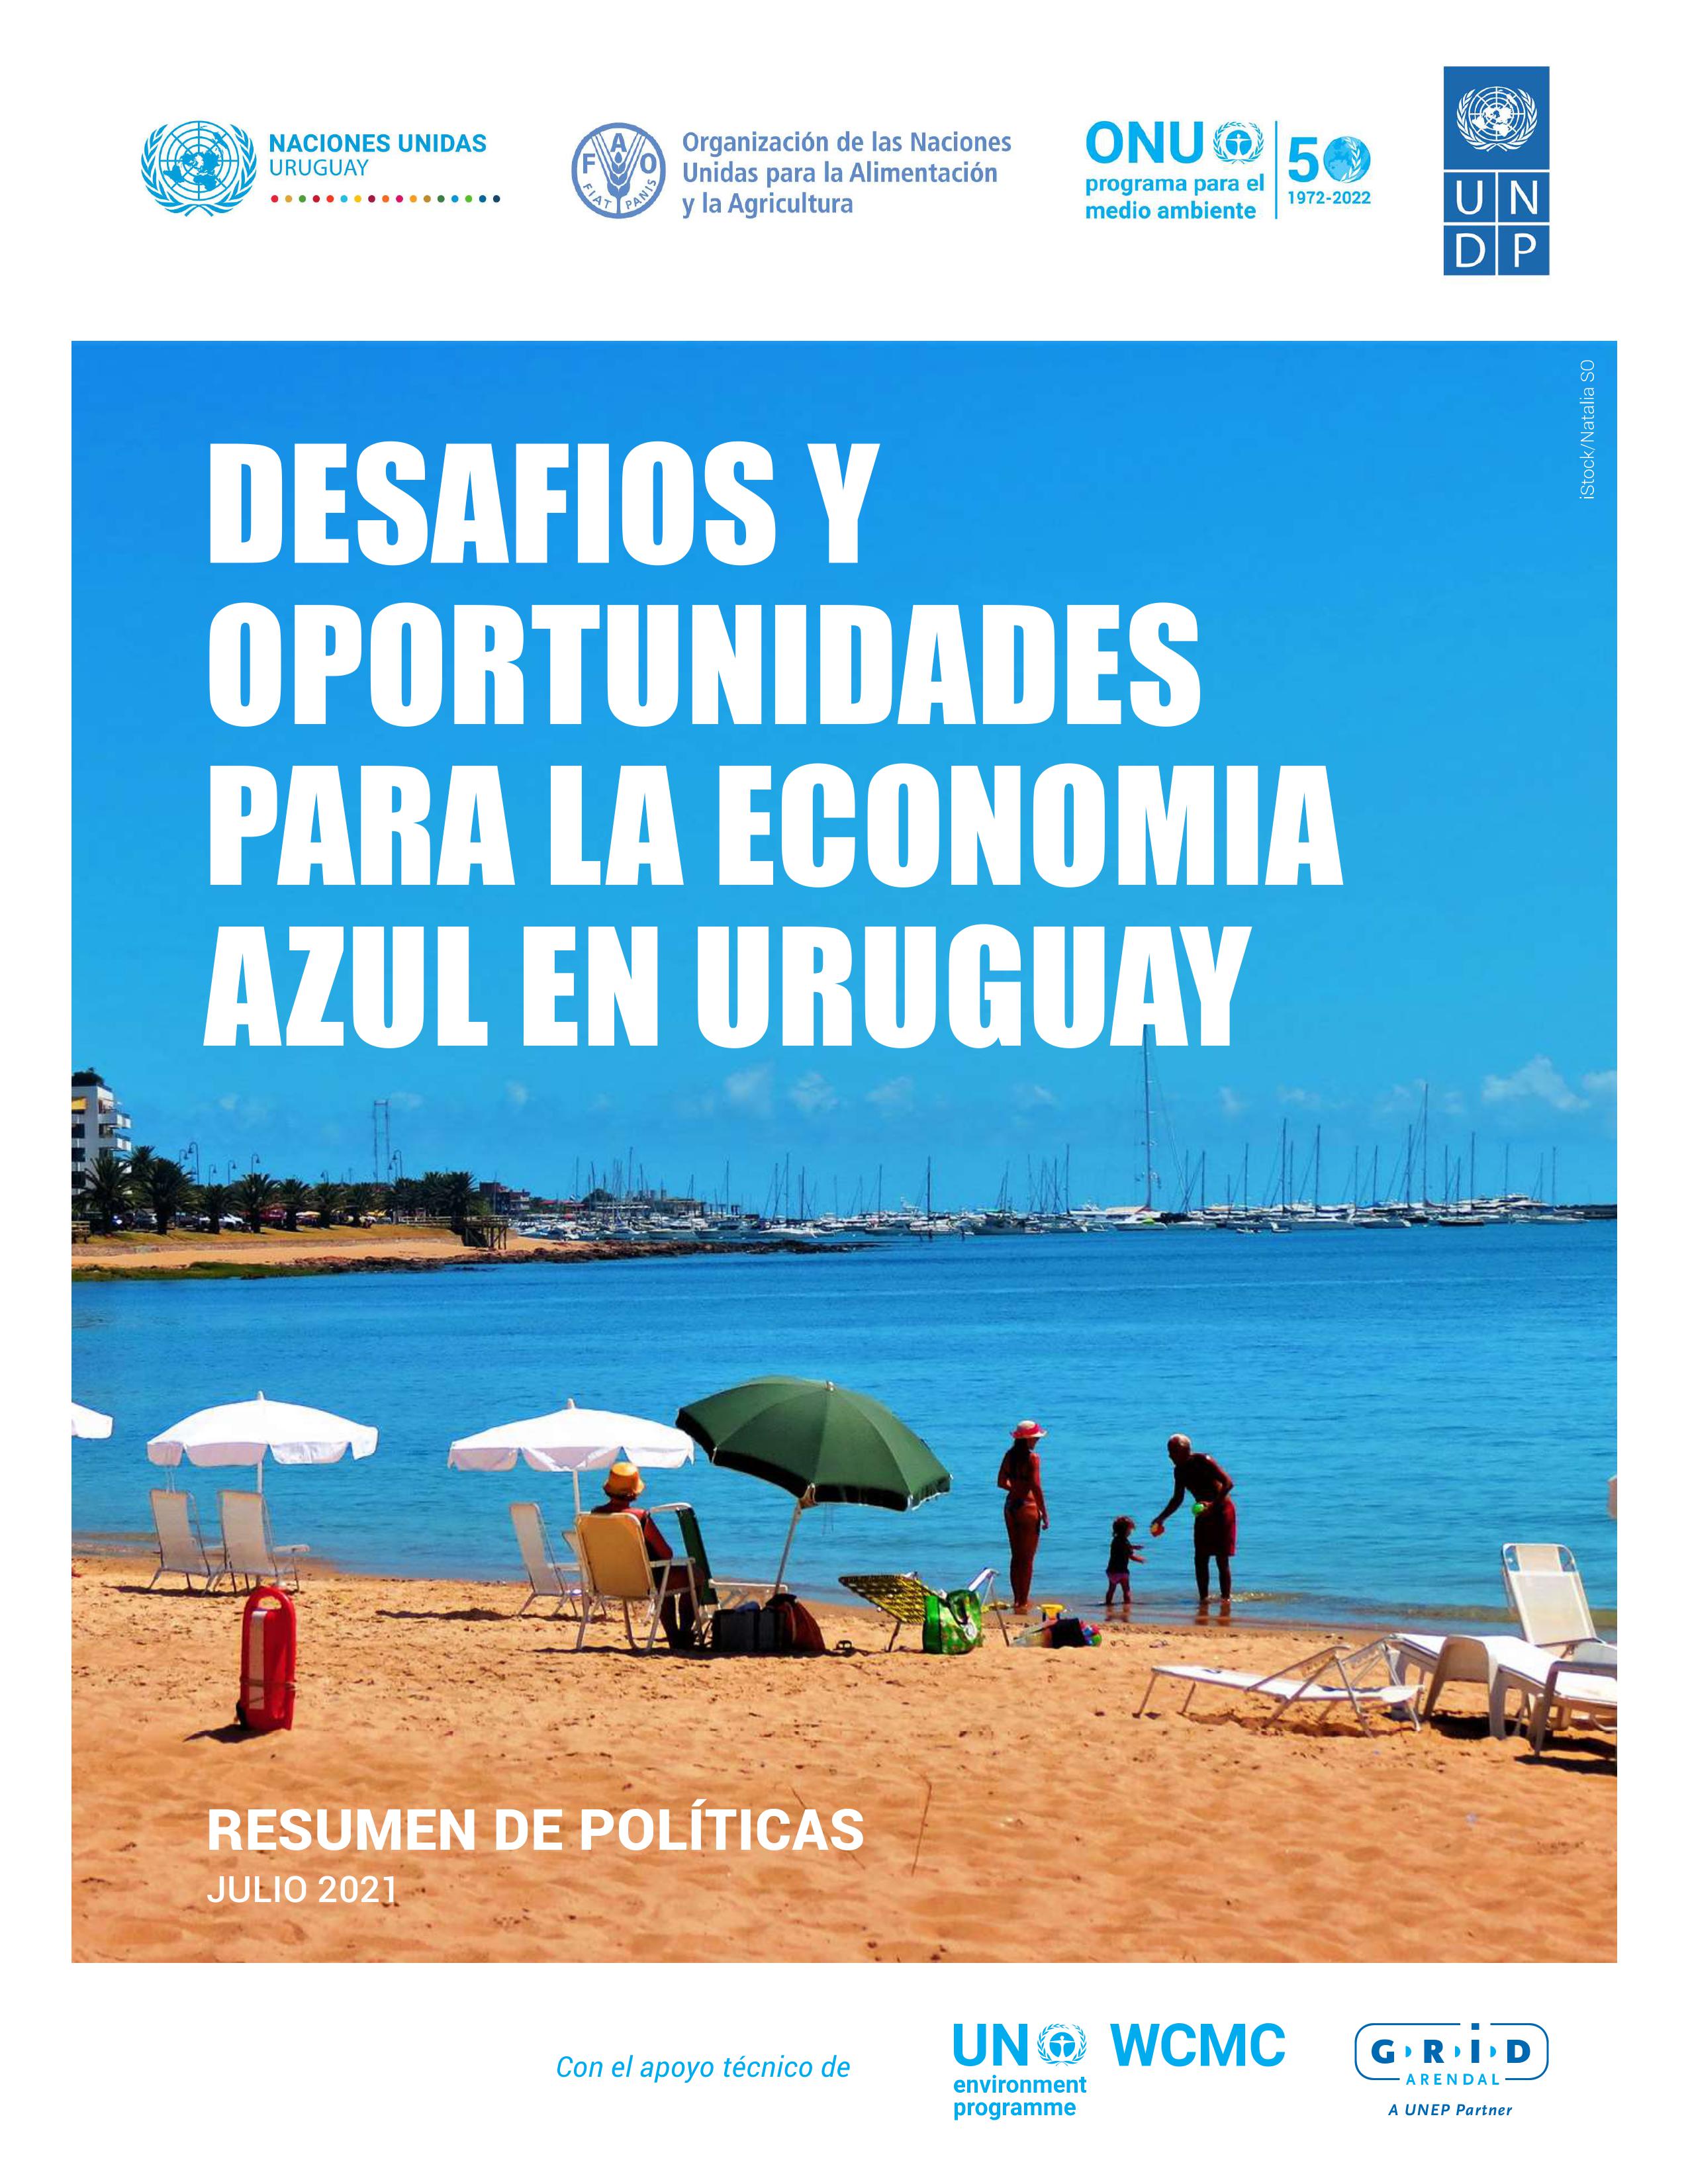 DESAFIOS Y OPORTUNIDADES PARA LA ECONOMIA AZUL EN URUGUAY